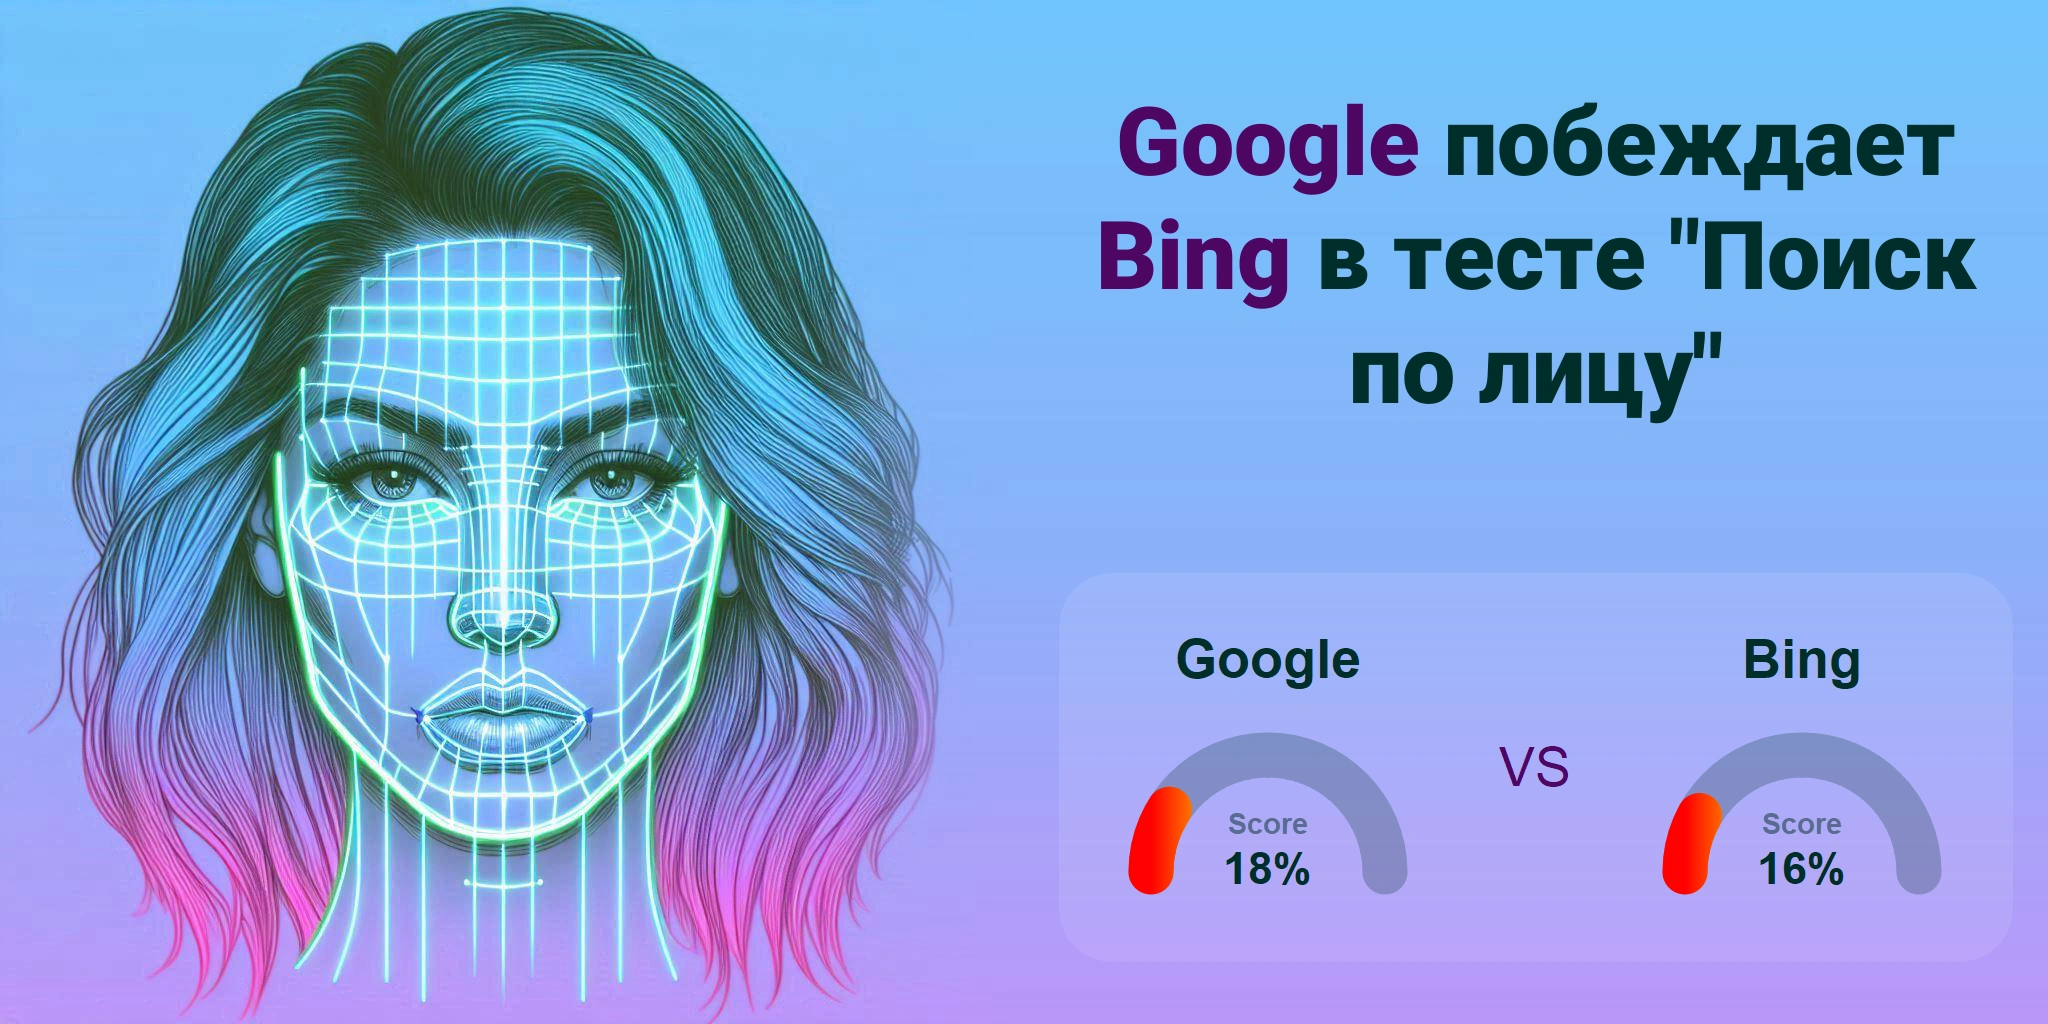 Что лучше для поиска по лицам: <br>Google или Bing?